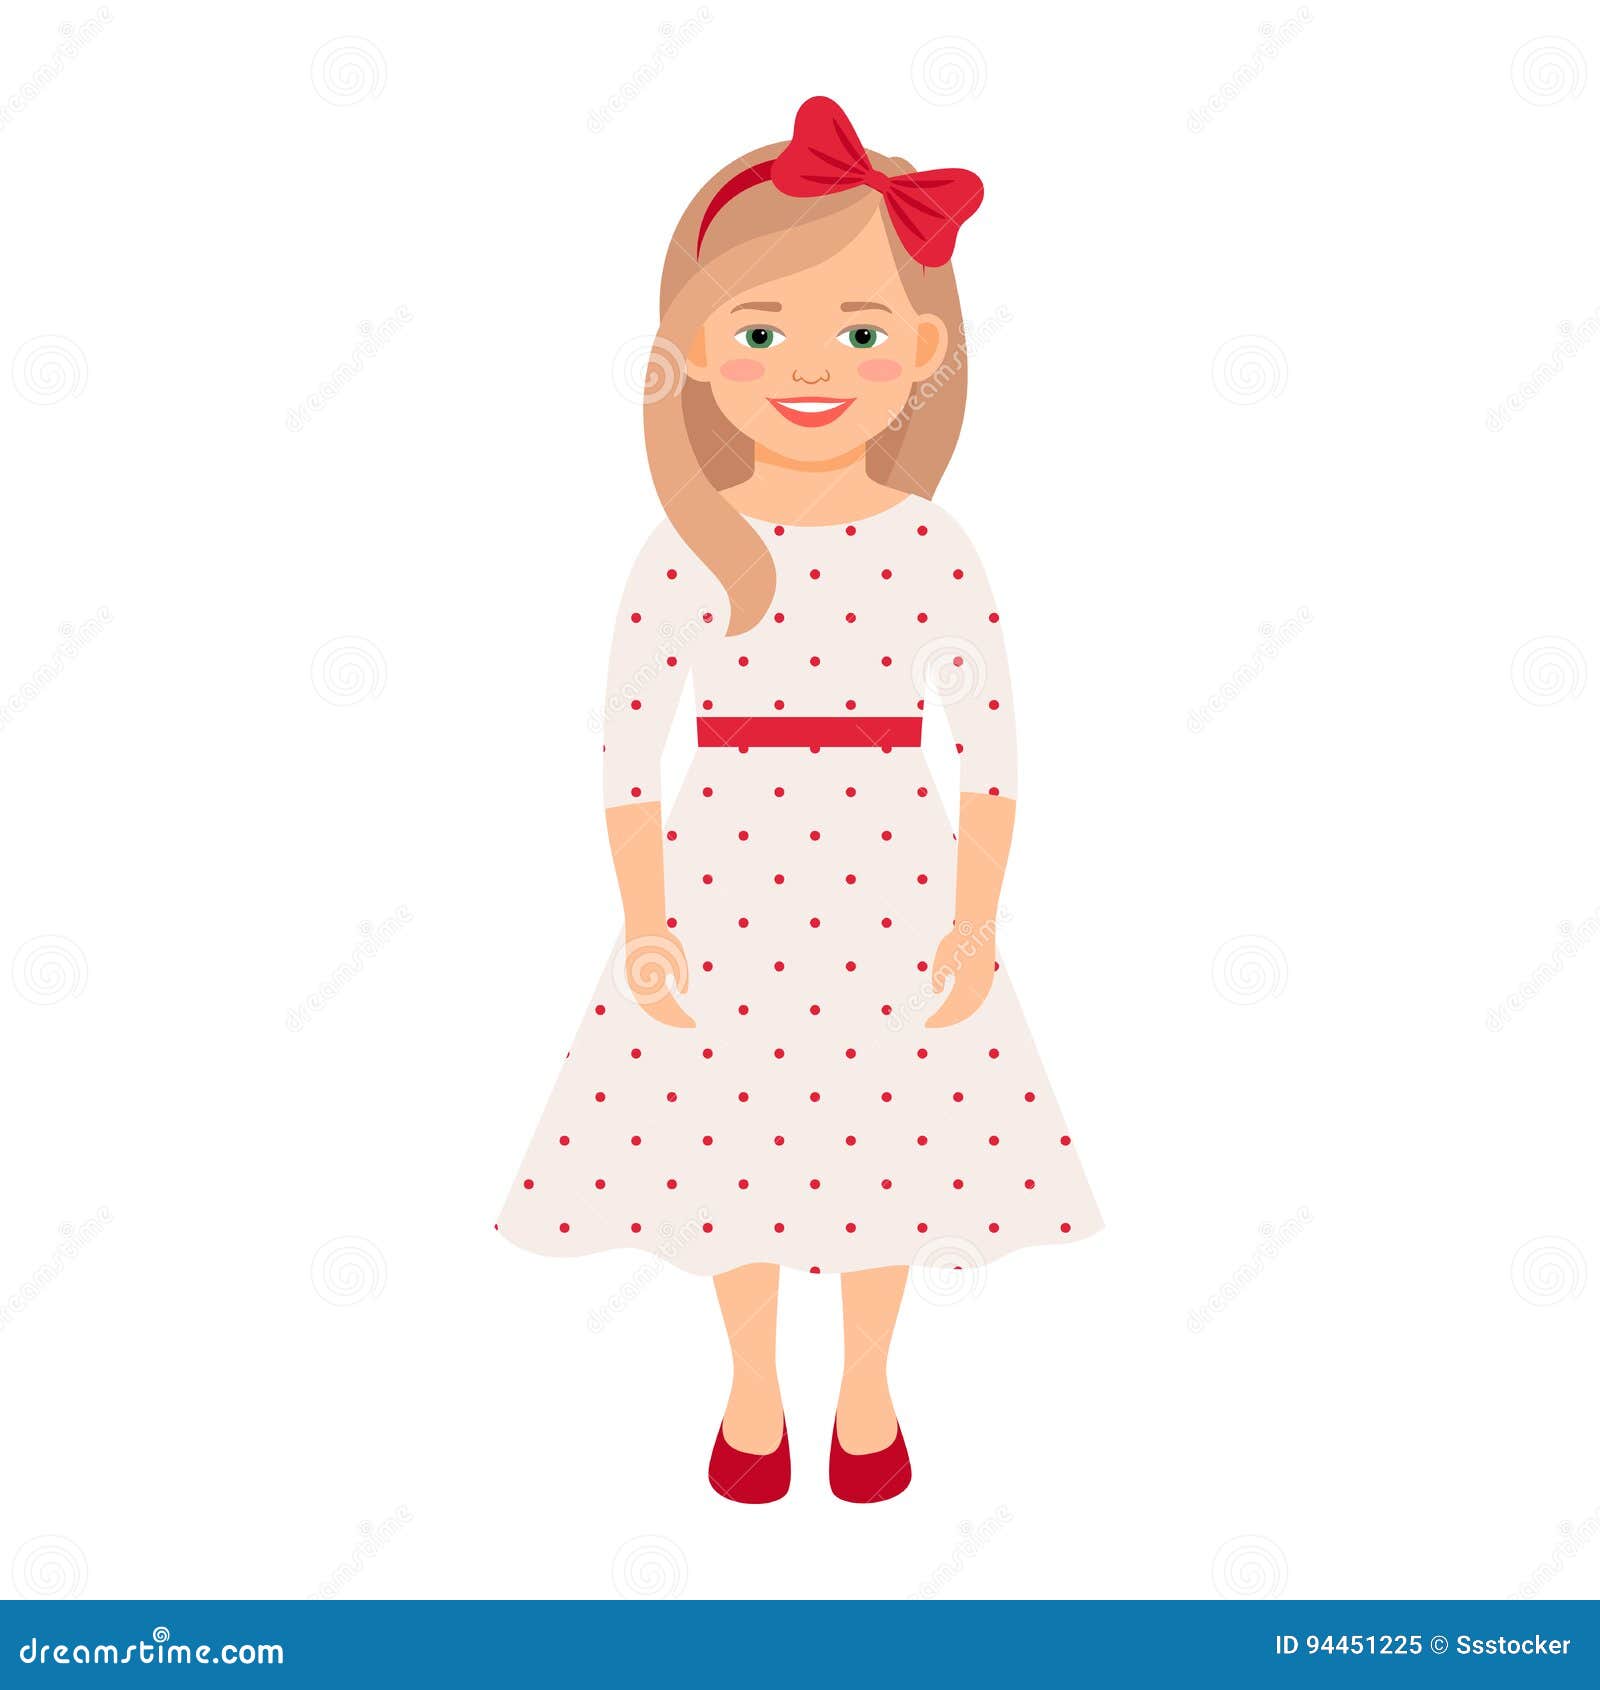 Girl in summer dress stock vector. Illustration of dress - 94451225